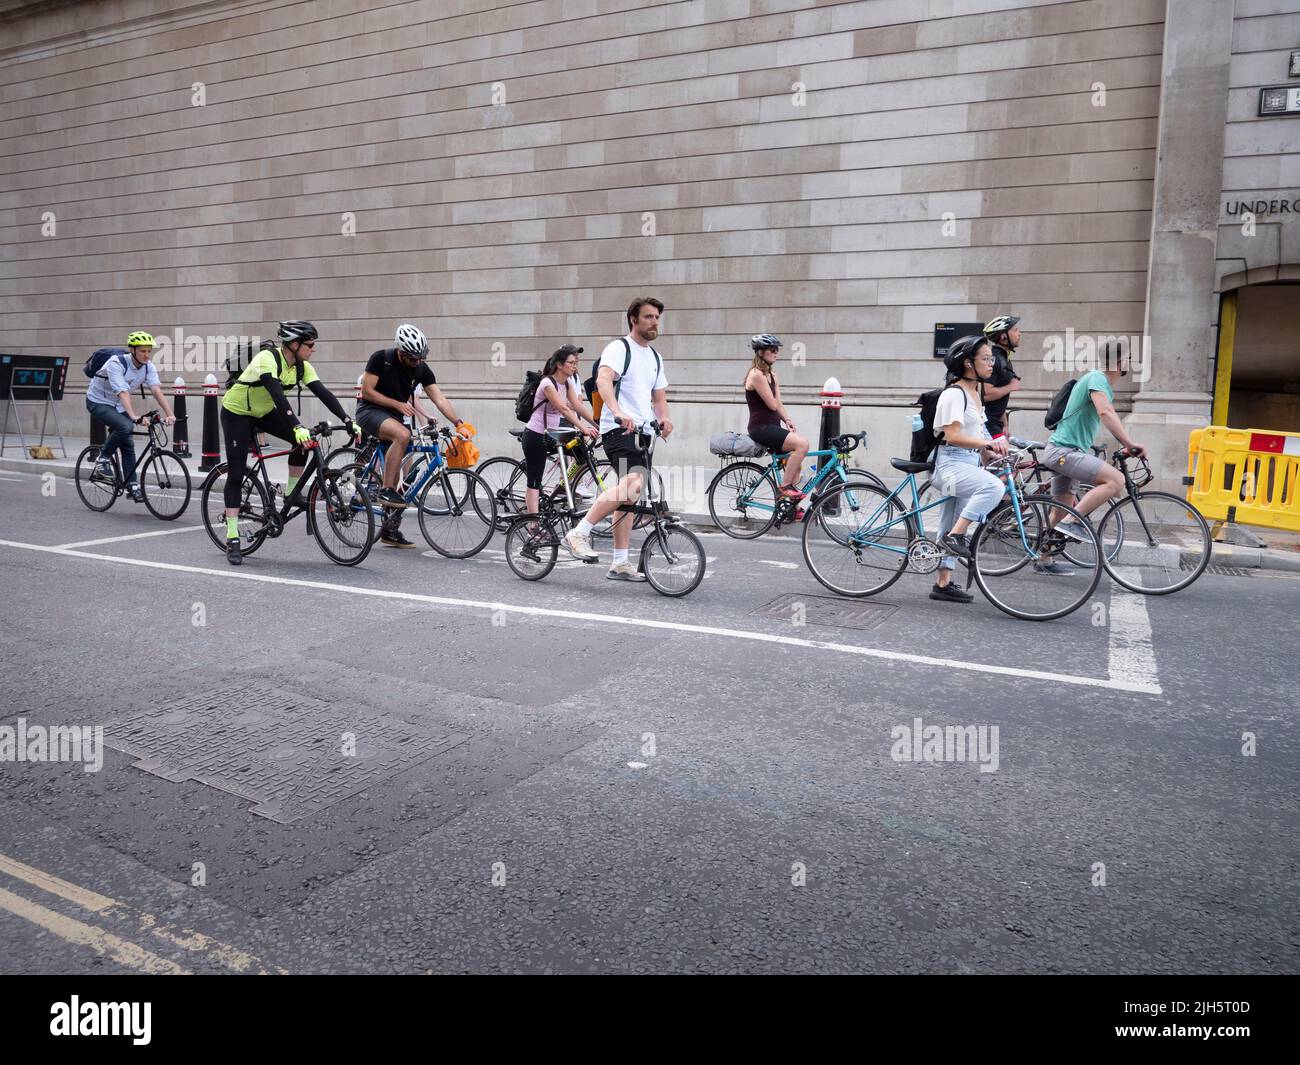 Cola de ciclistas fuera del perímetro amurallado del Banco de Inglaterra, Lothbury, Londres Foto de stock